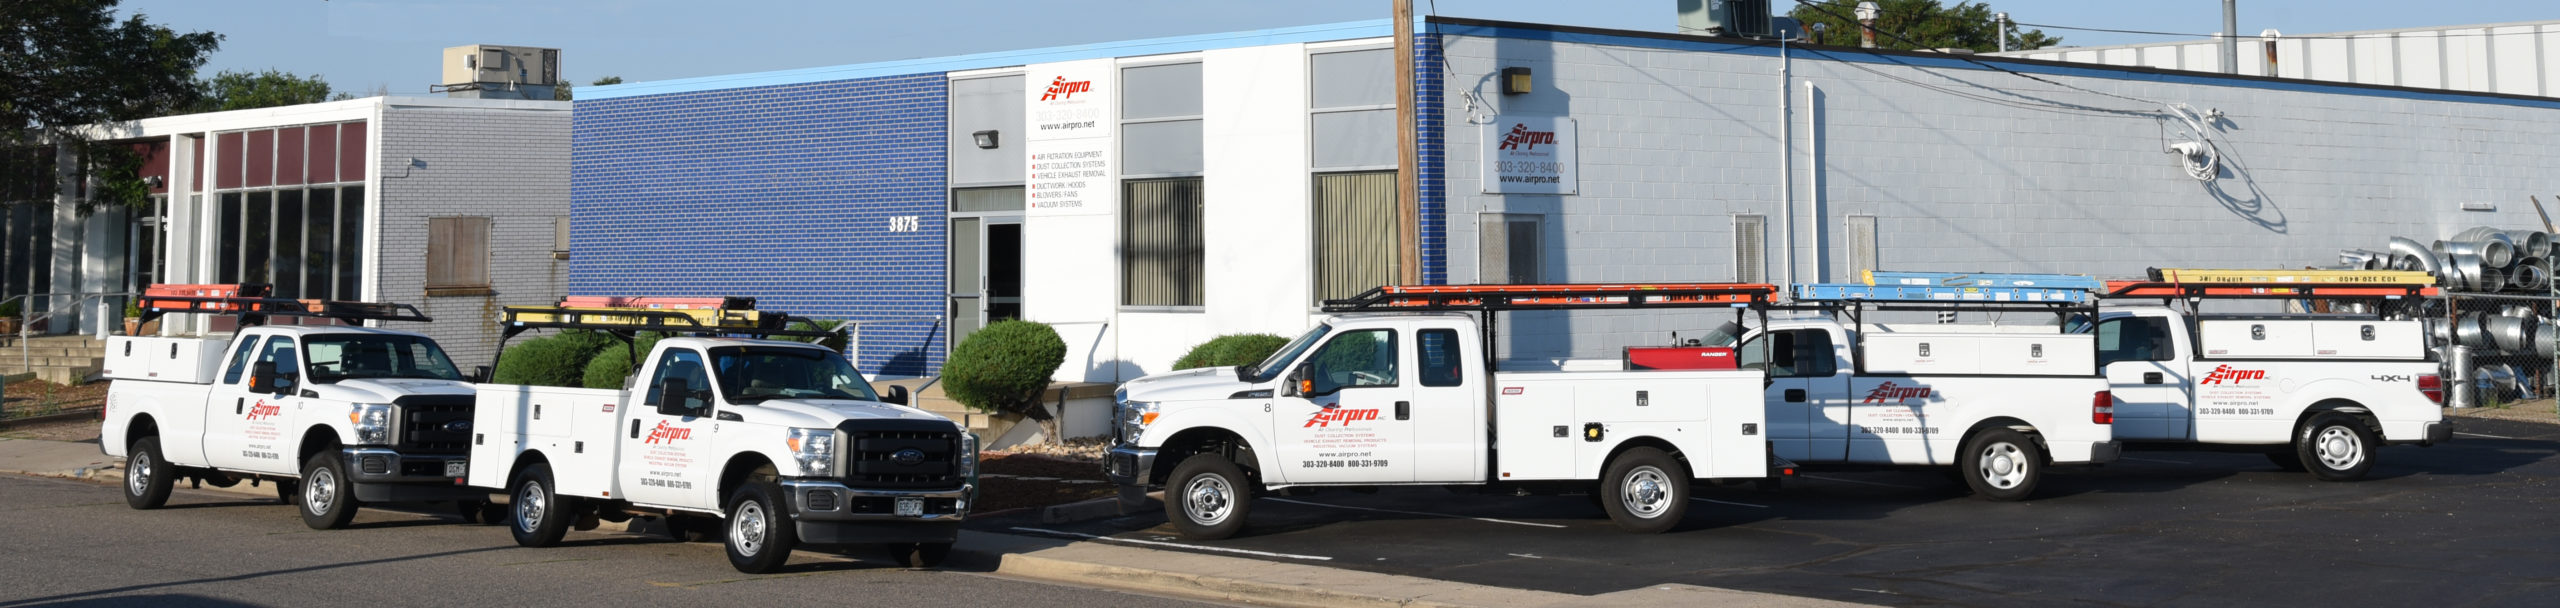 Airpro Service Trucks